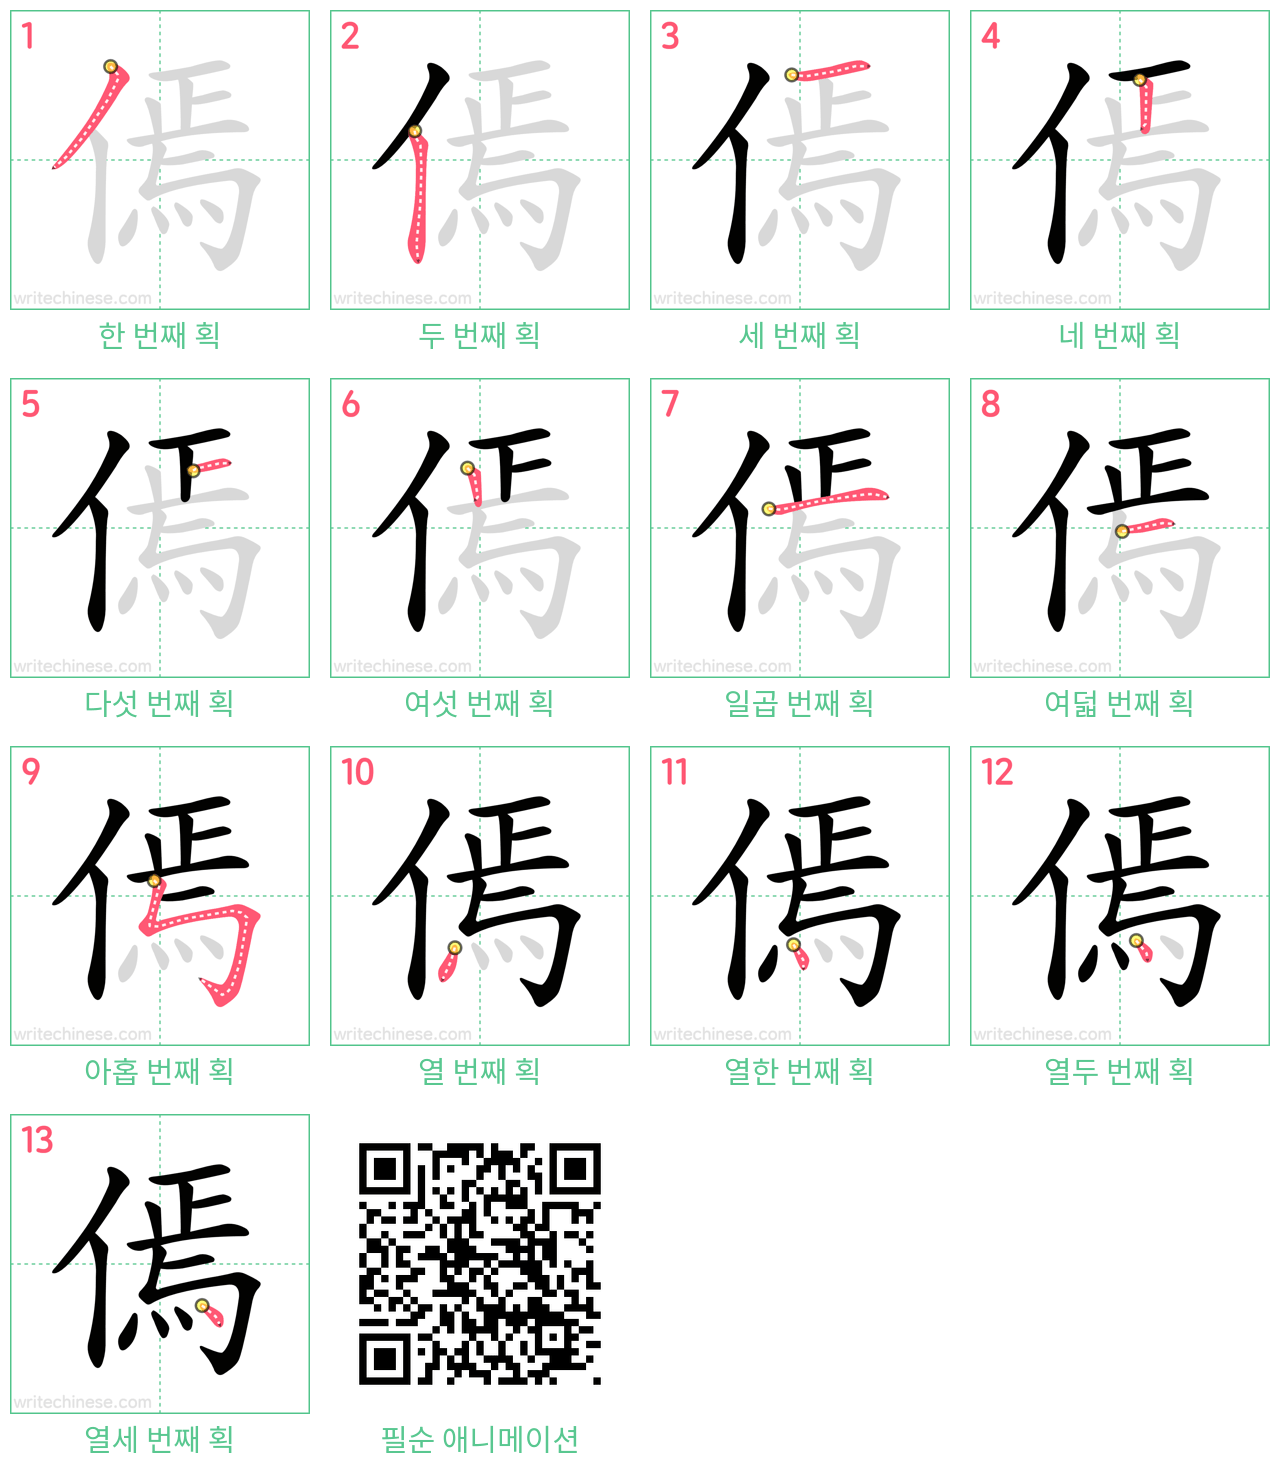 傿 step-by-step stroke order diagrams